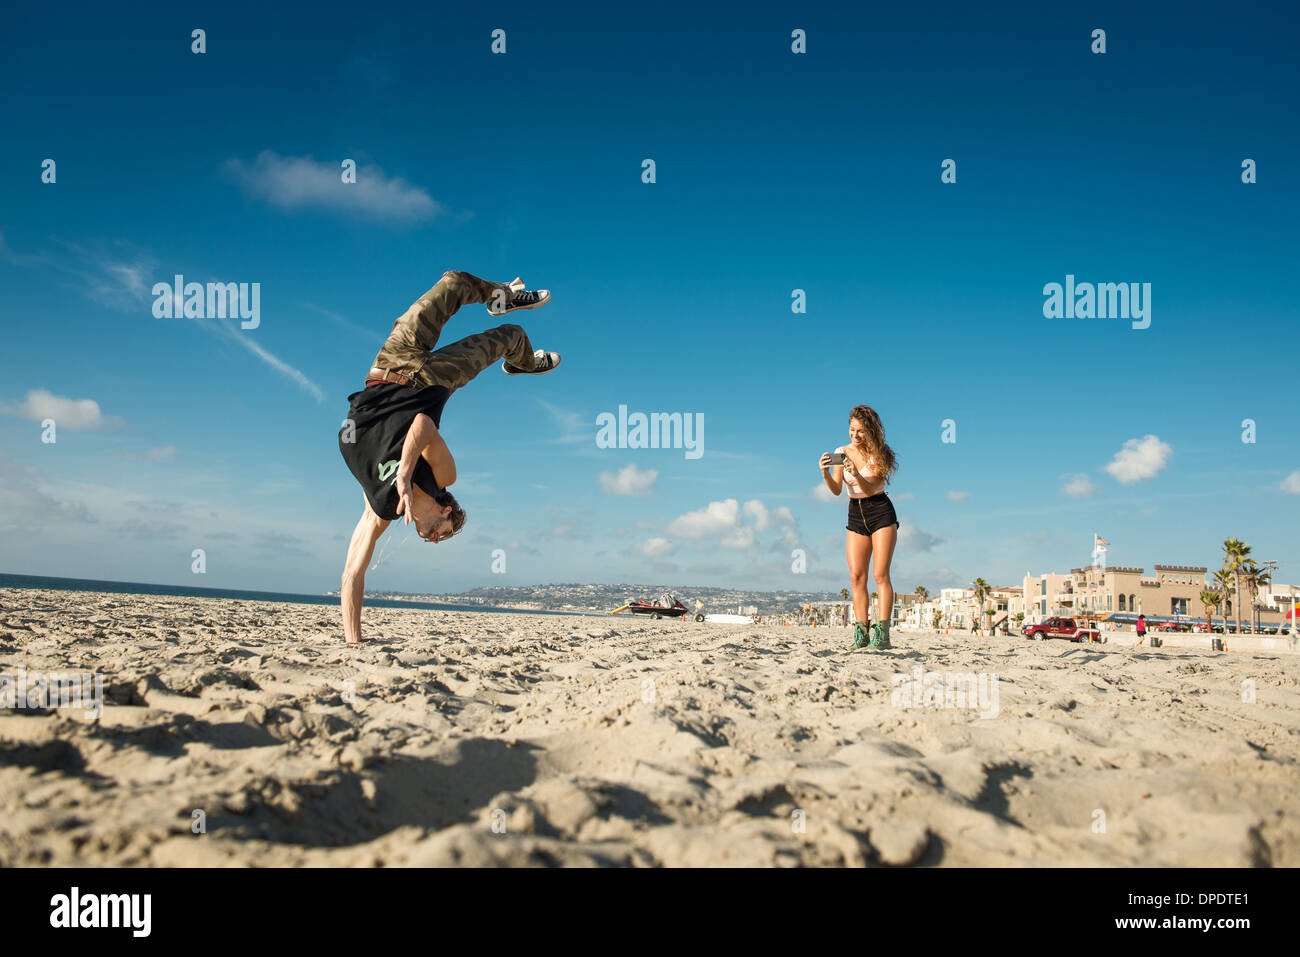 Giovane donna di fotografare il mio ragazzo facendo backflip su San Diego beach Foto Stock